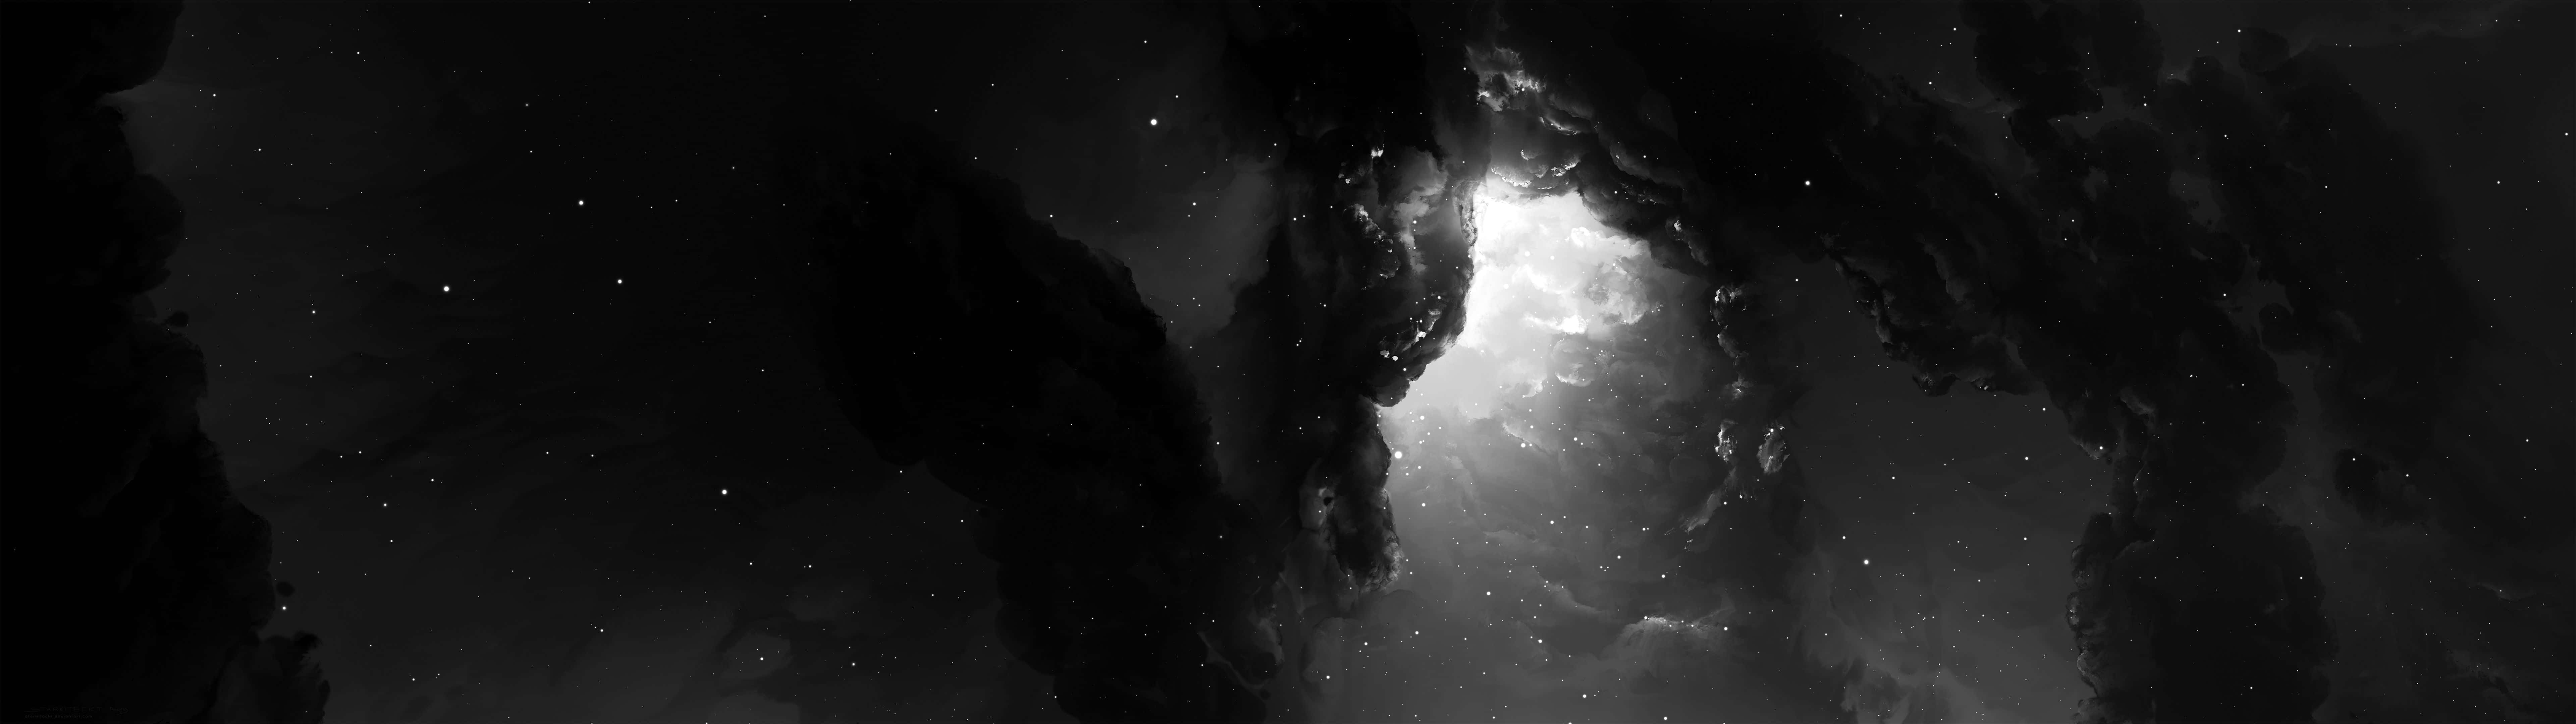 Unaimagen En Blanco Y Negro De Una Cueva Con Estrellas. Fondo de pantalla